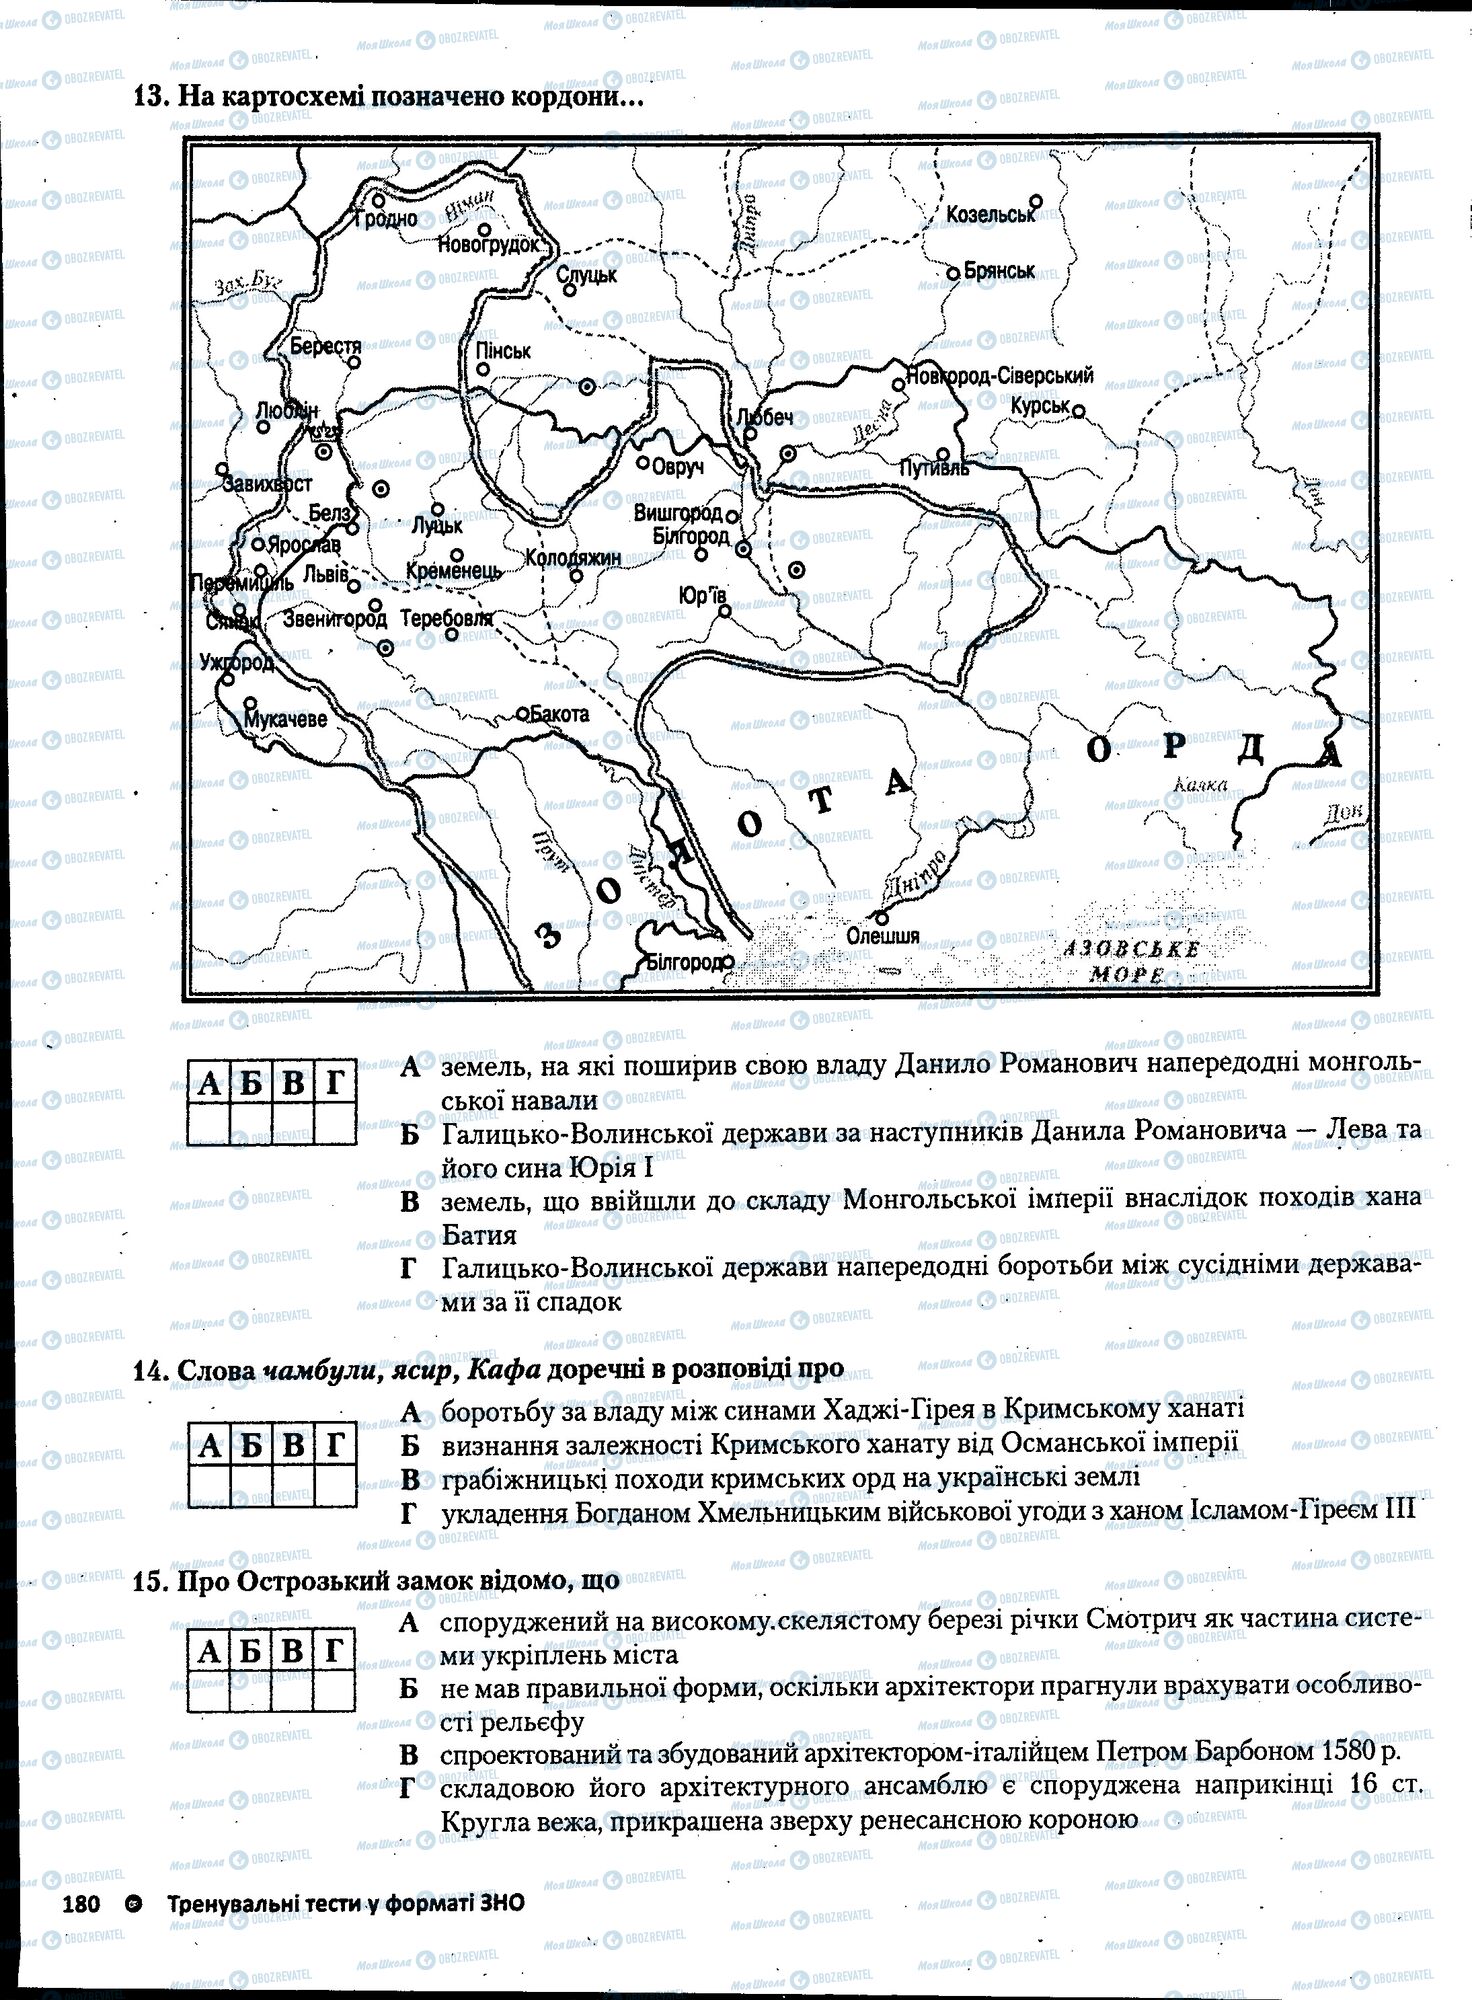 ЗНО История Украины 11 класс страница 180